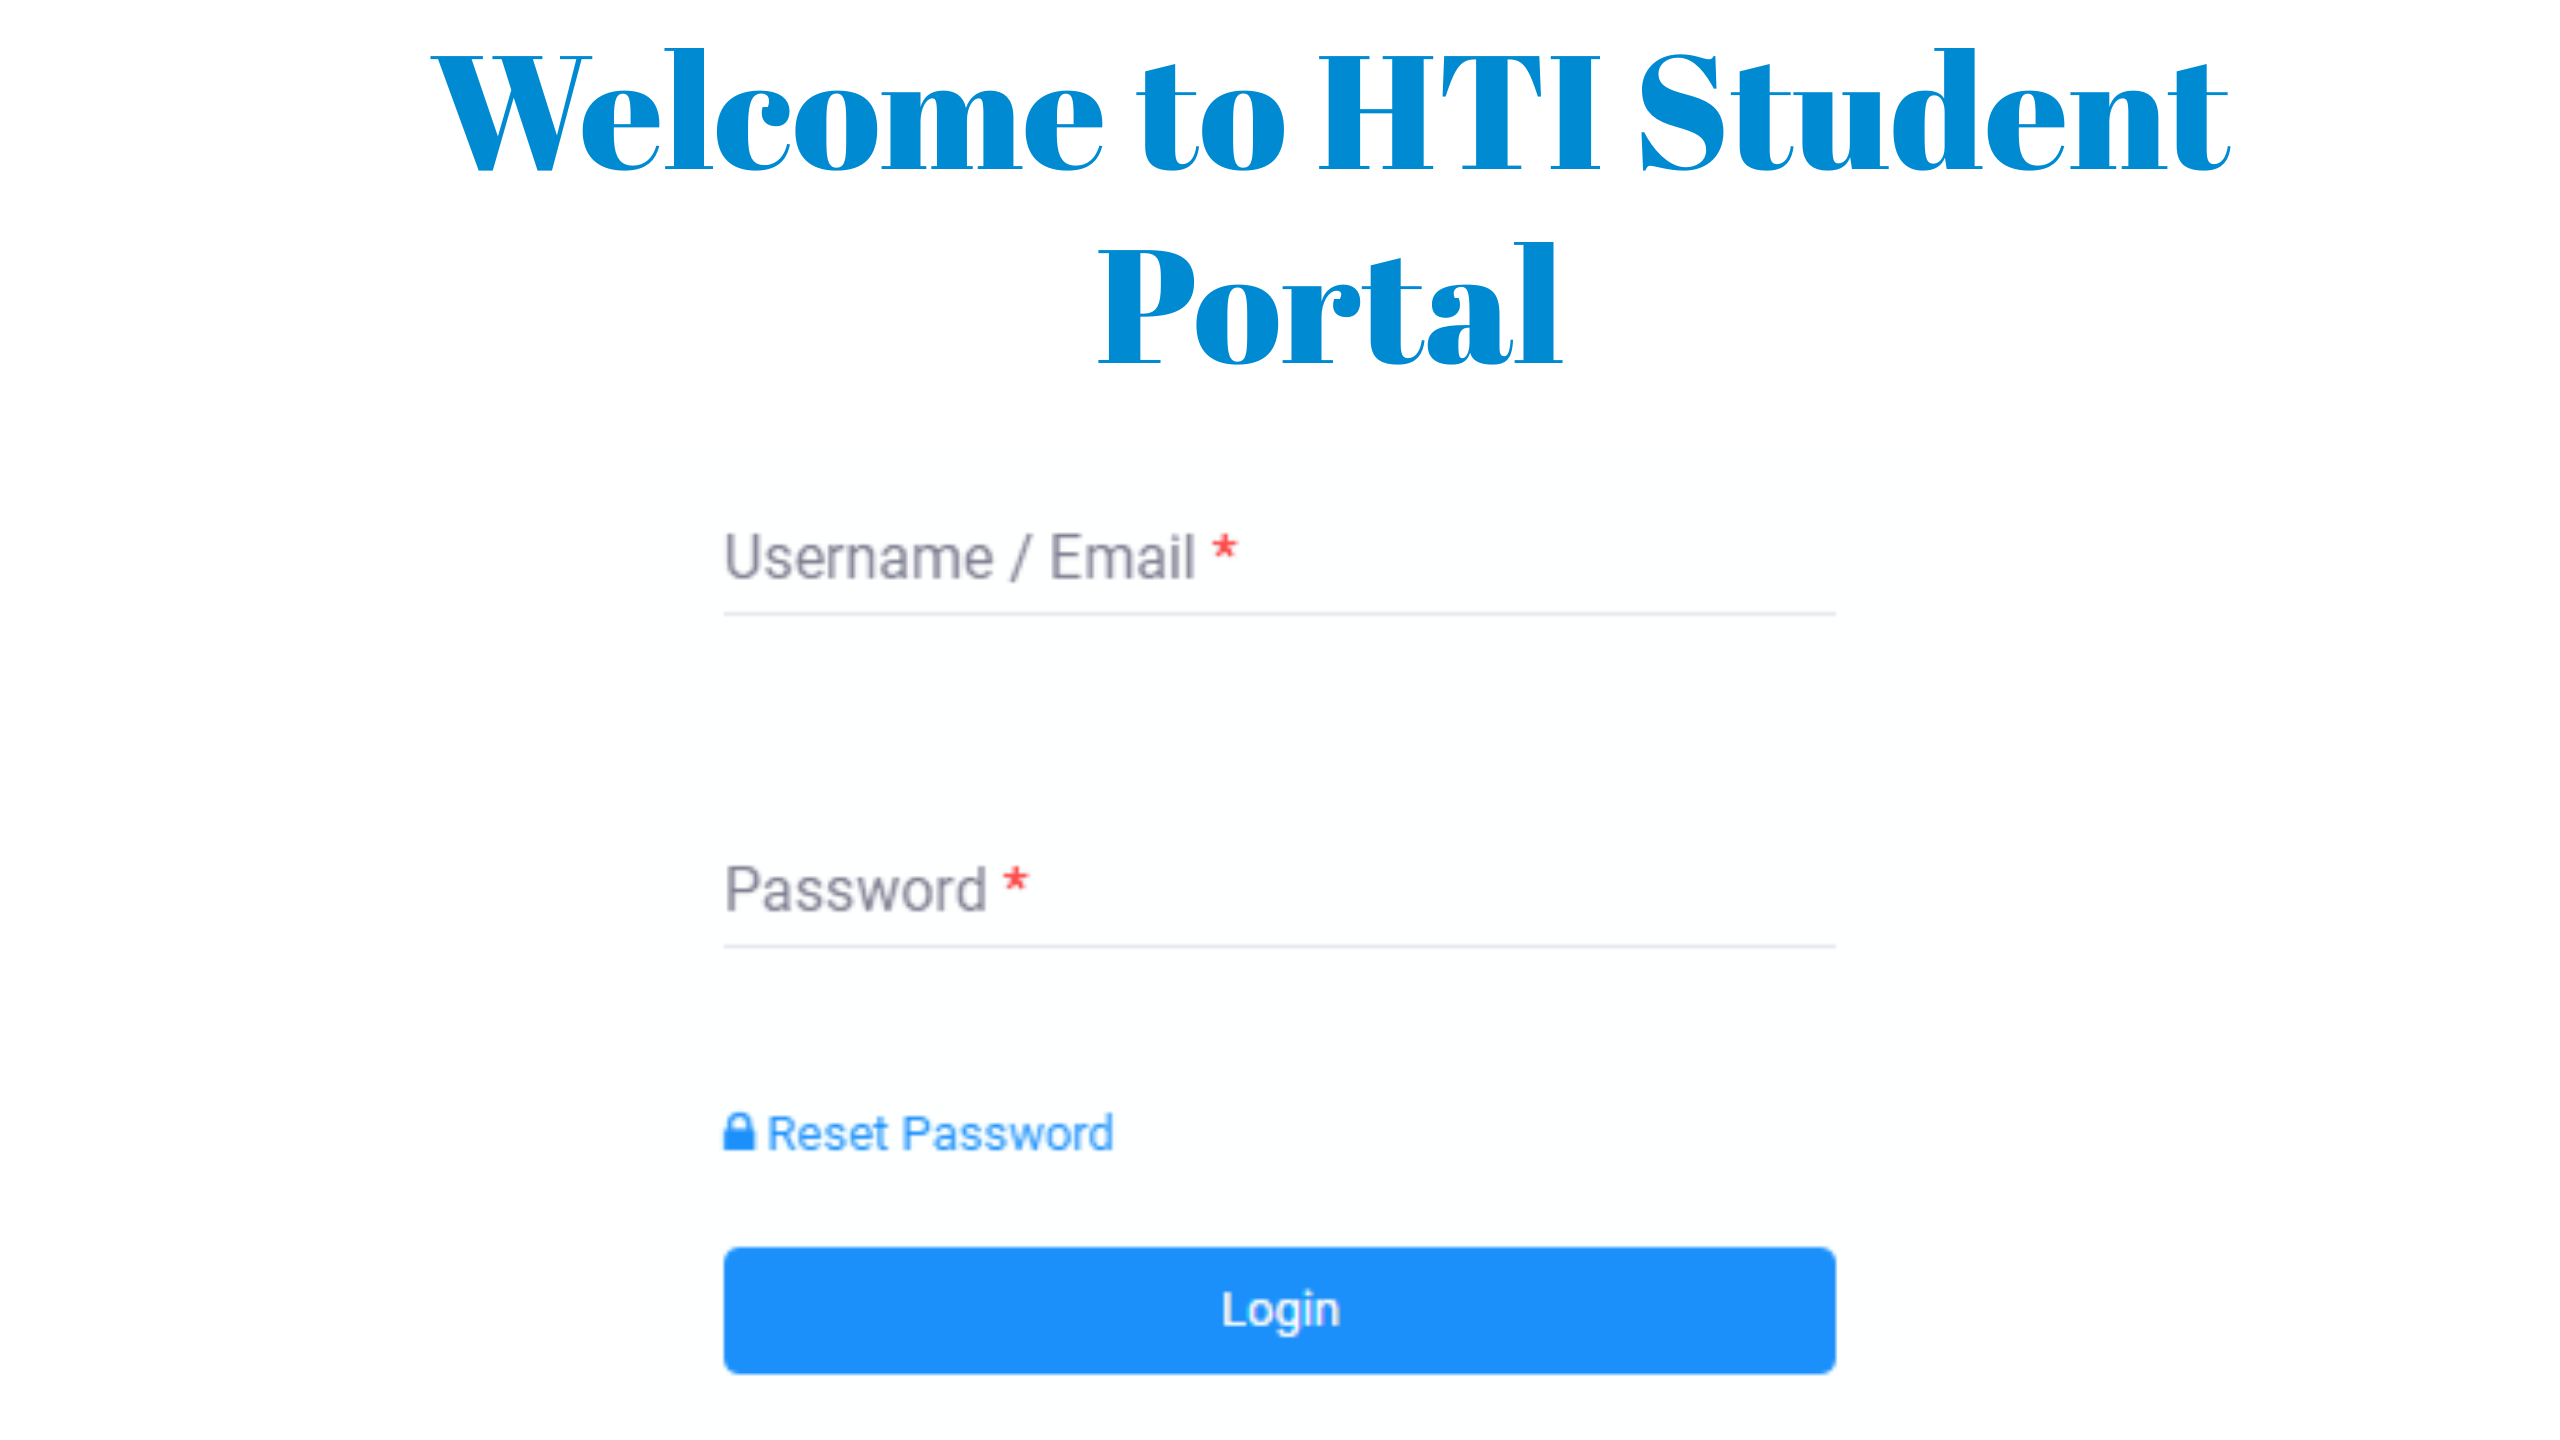 HTI Student Portal